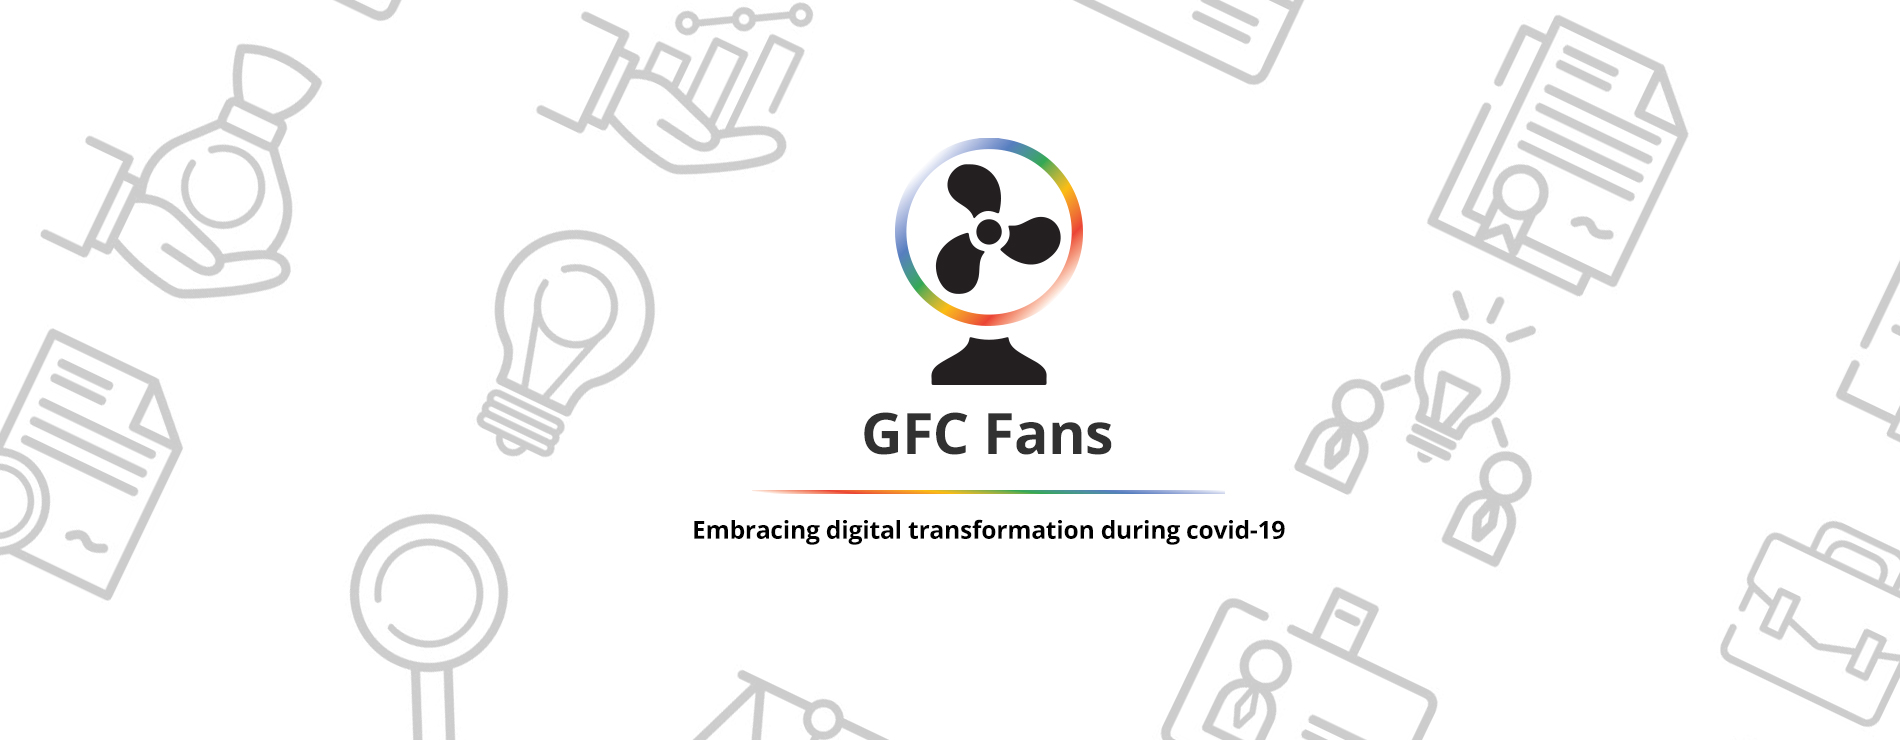 GFC Fans – IG2